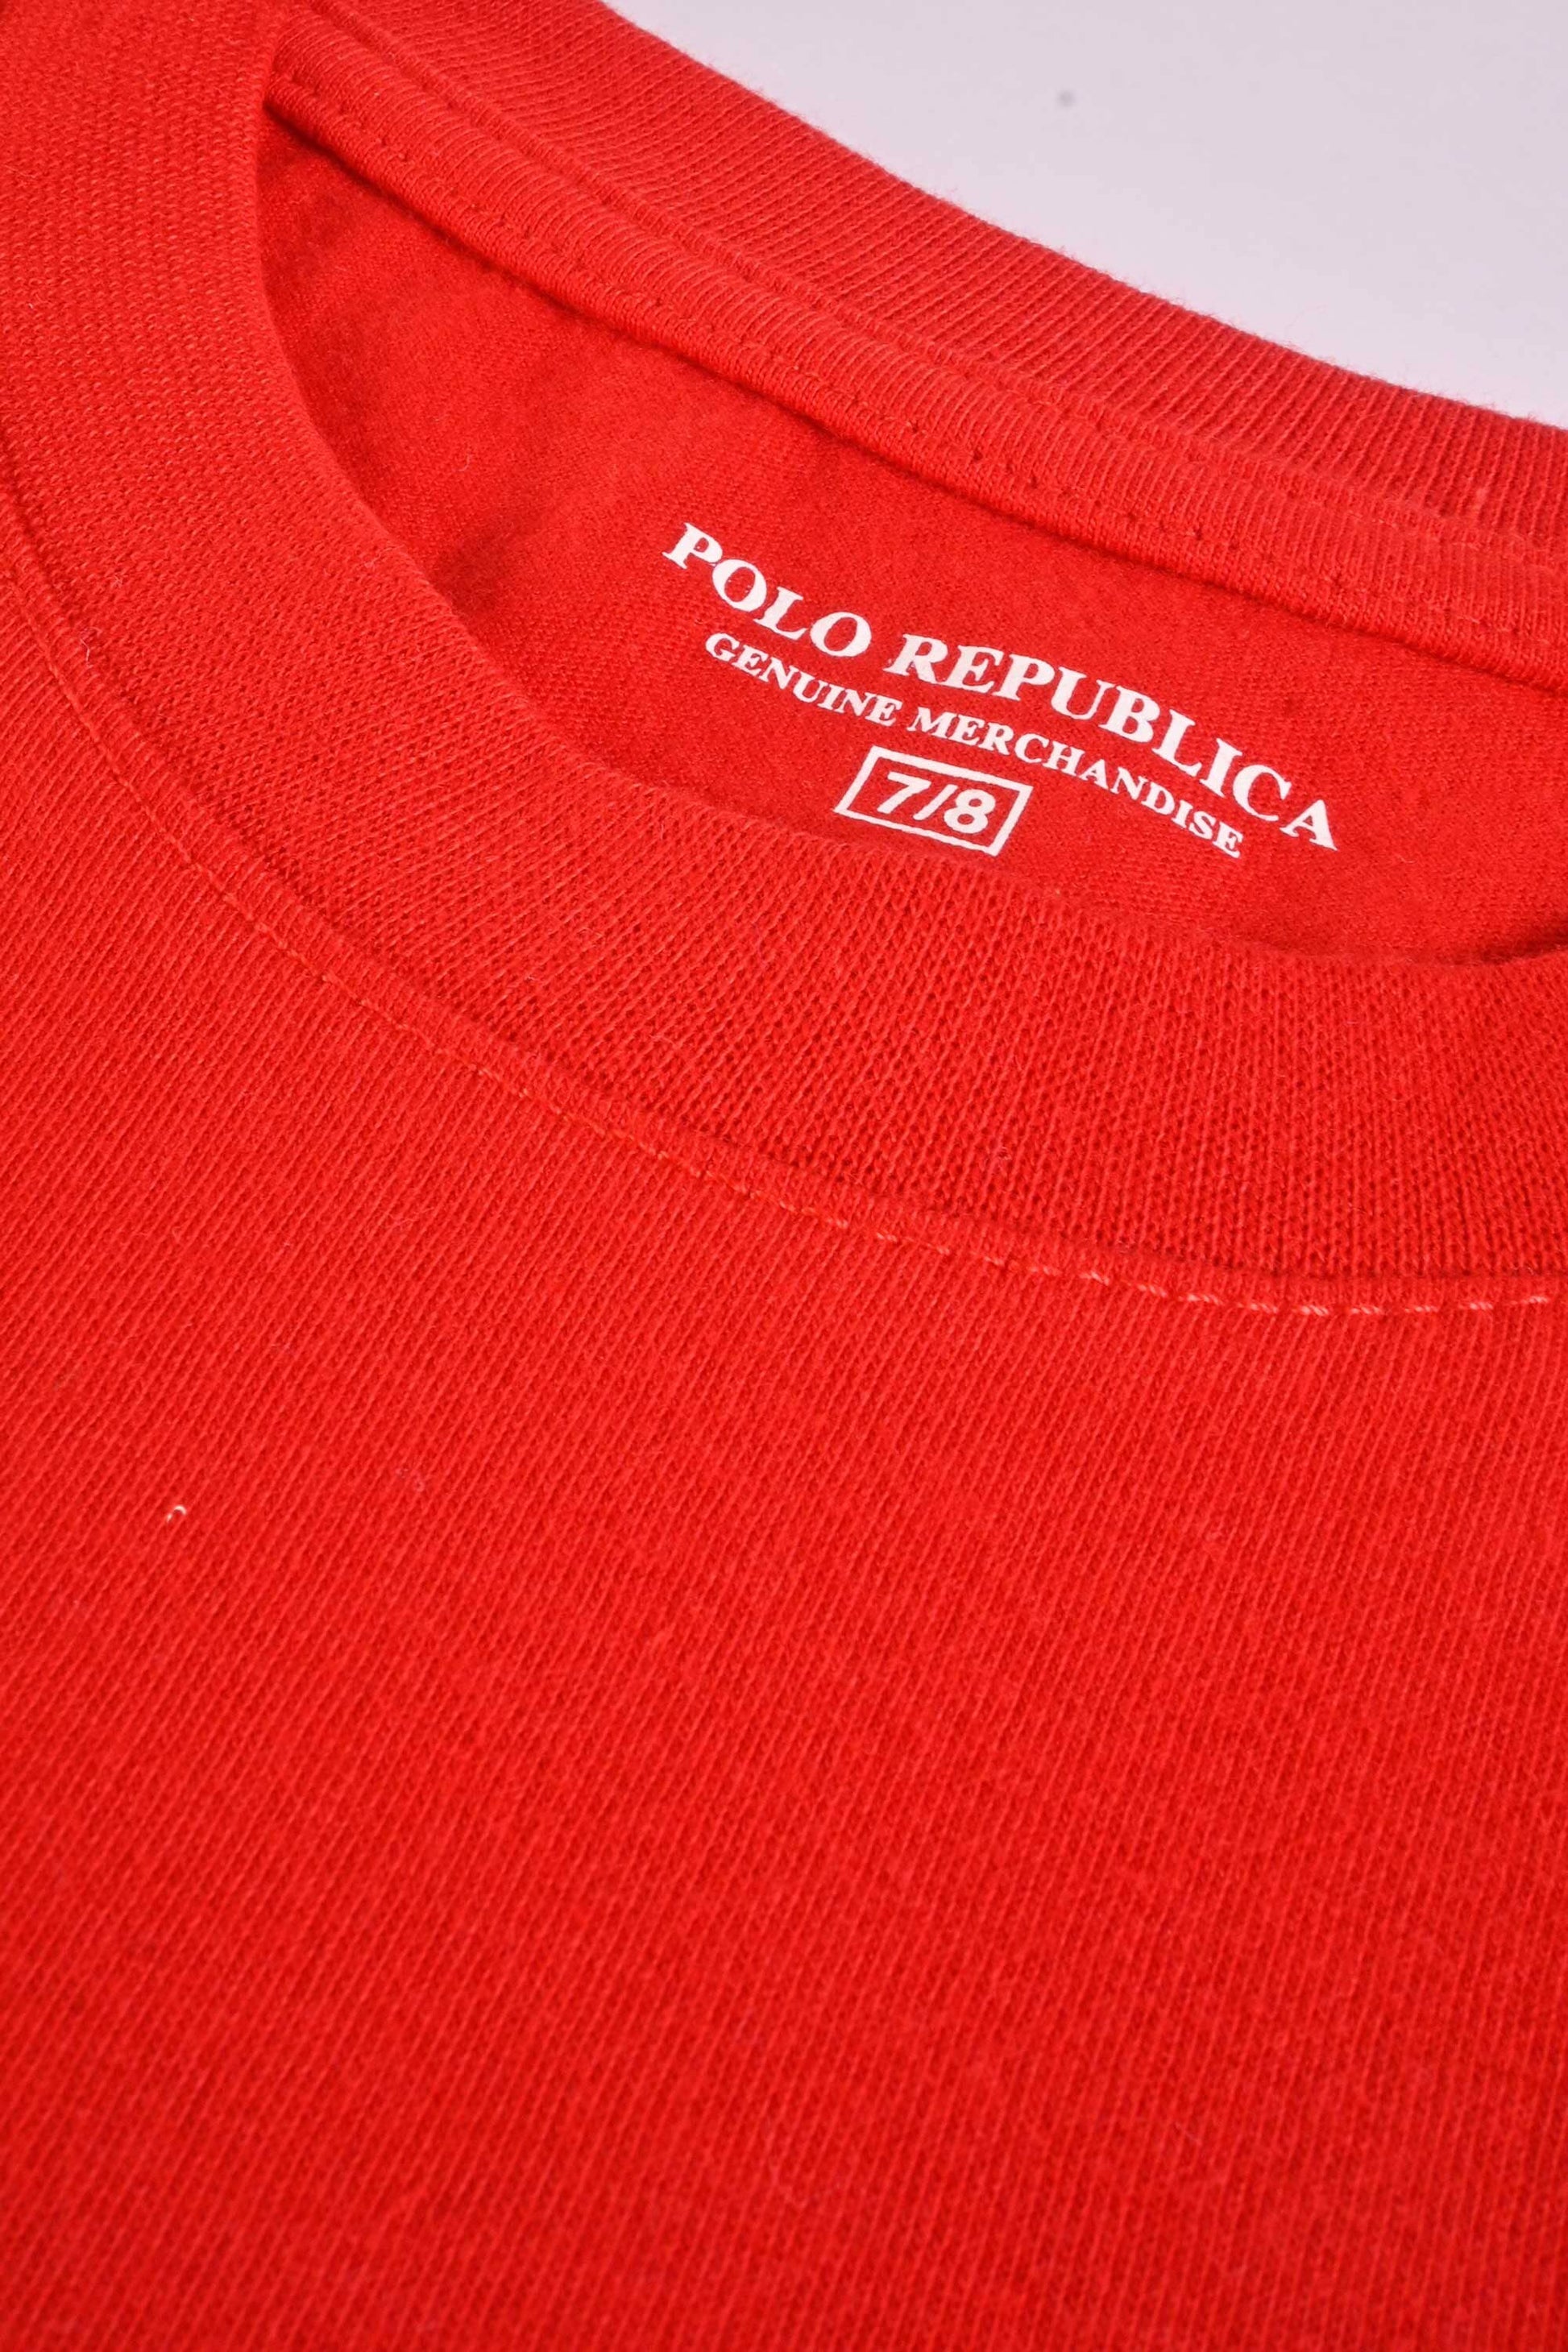 Polo Republica Boy's Piston Cup Printed Tee Shirt